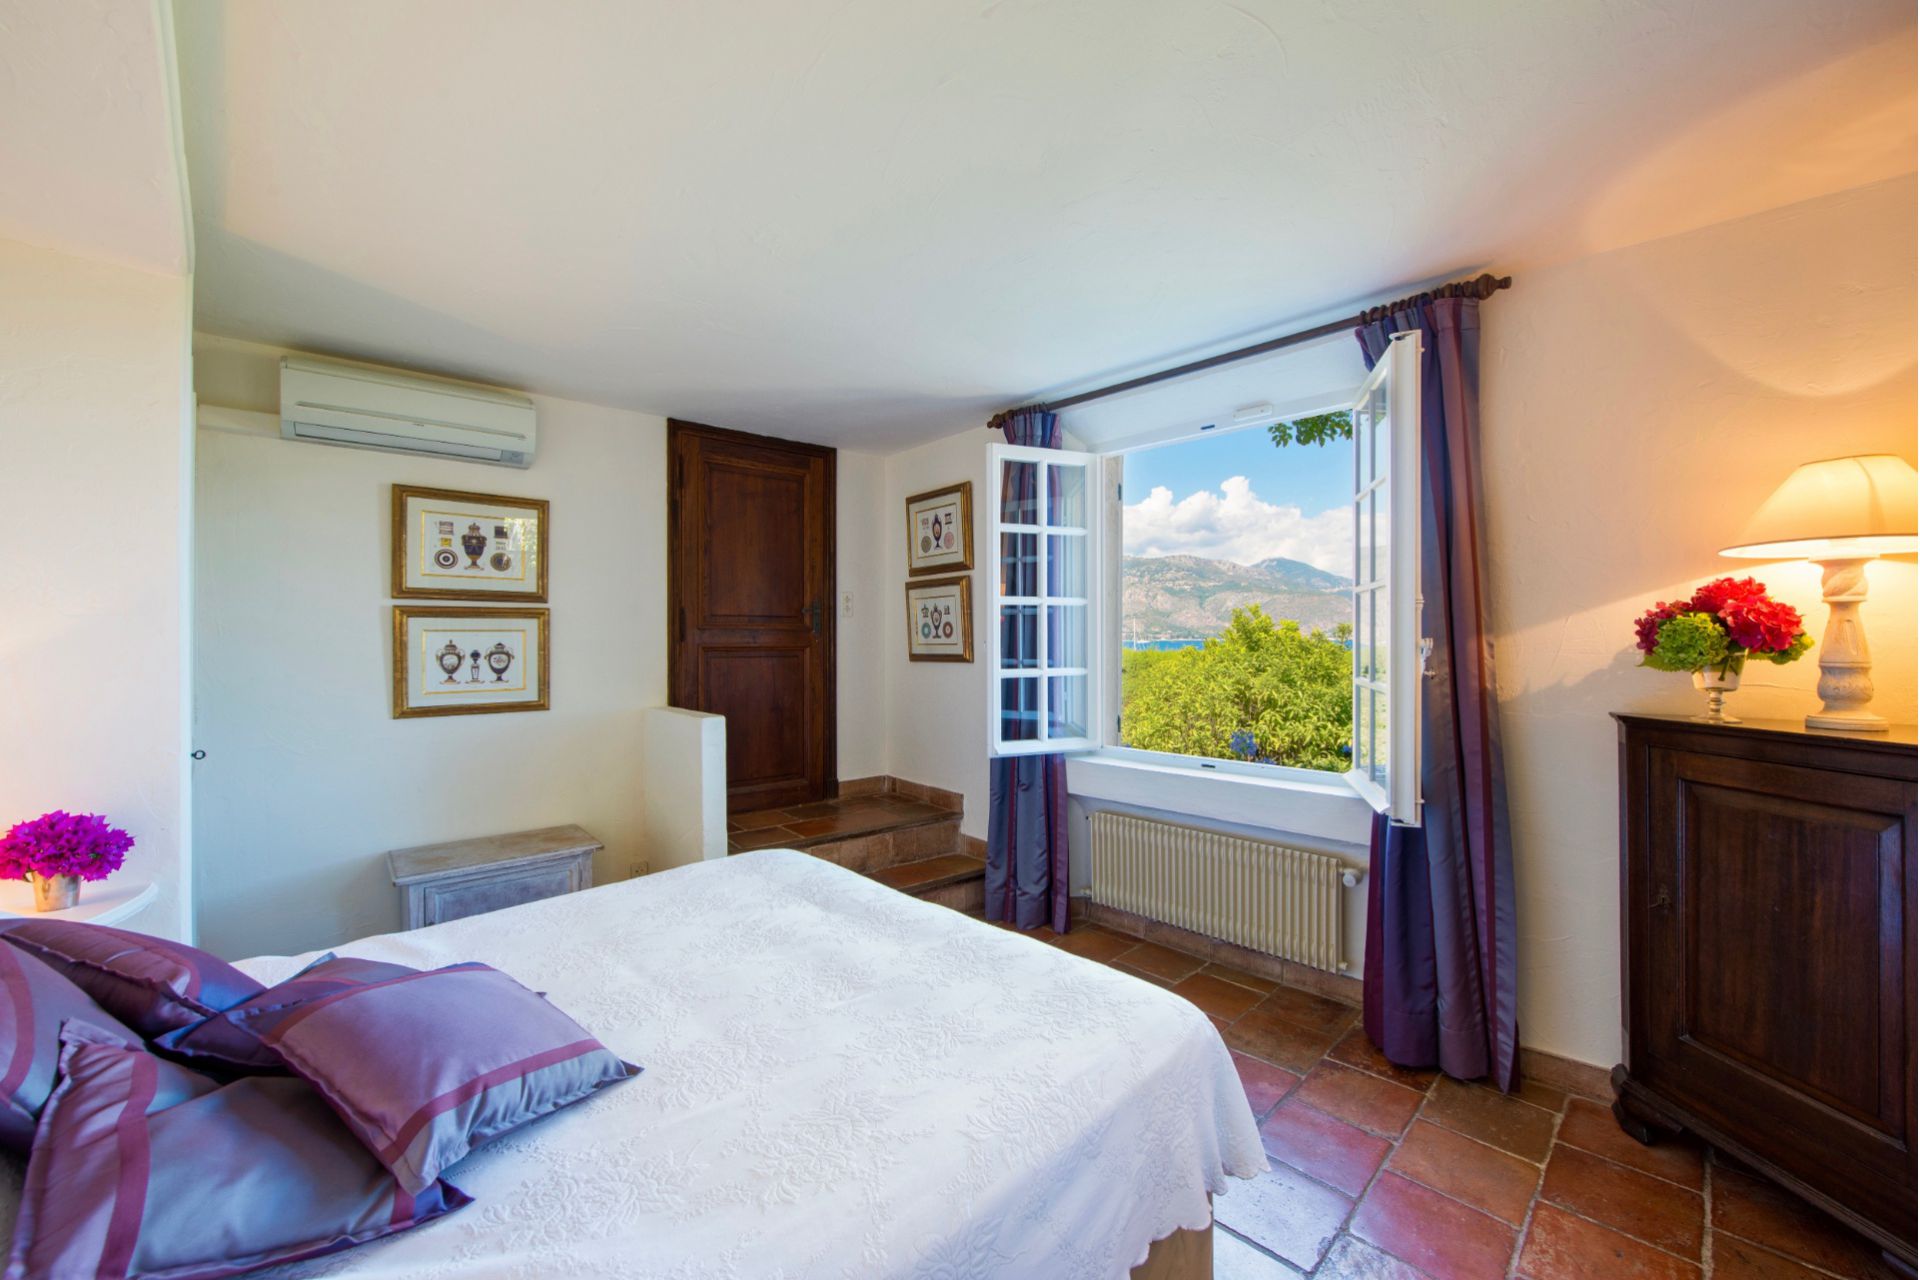 Méditerranée Location Villa avec Piscine privée à St-Jean-Cap-Ferrat, Côte d'Azur